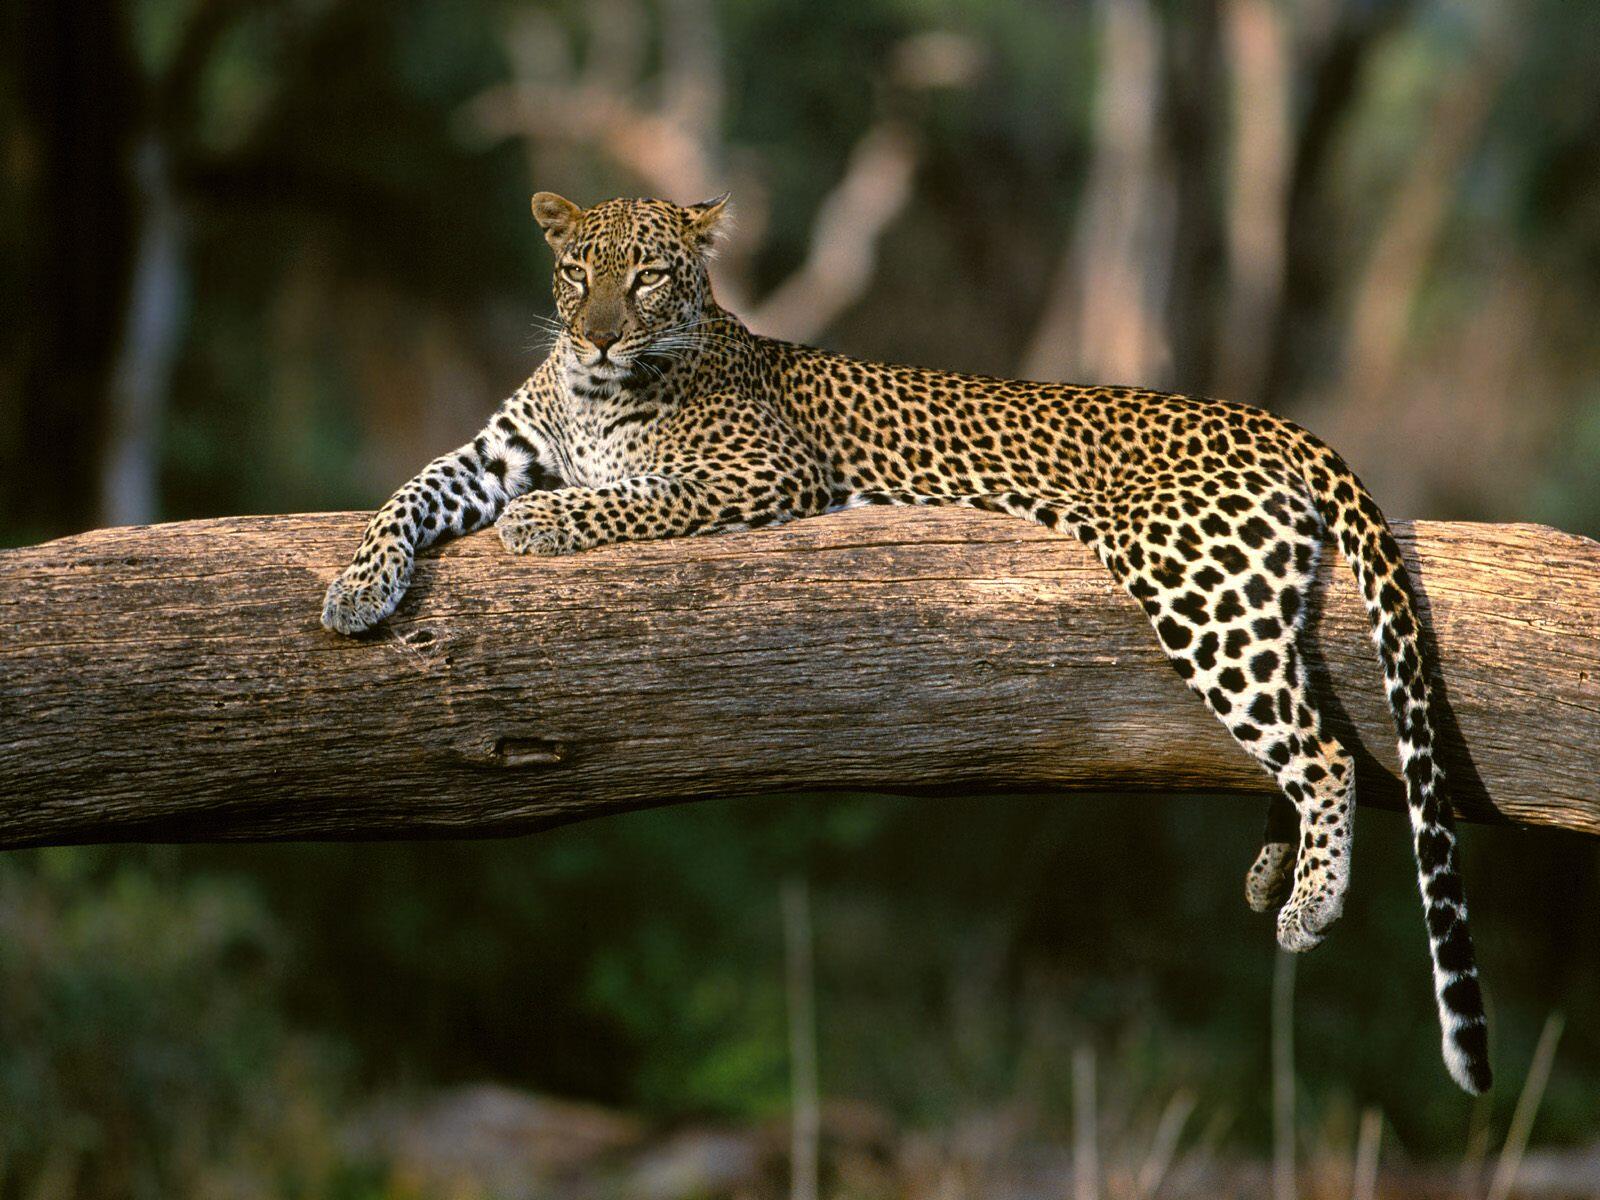 Wallpapers leopard resting fallen tree on the desktop